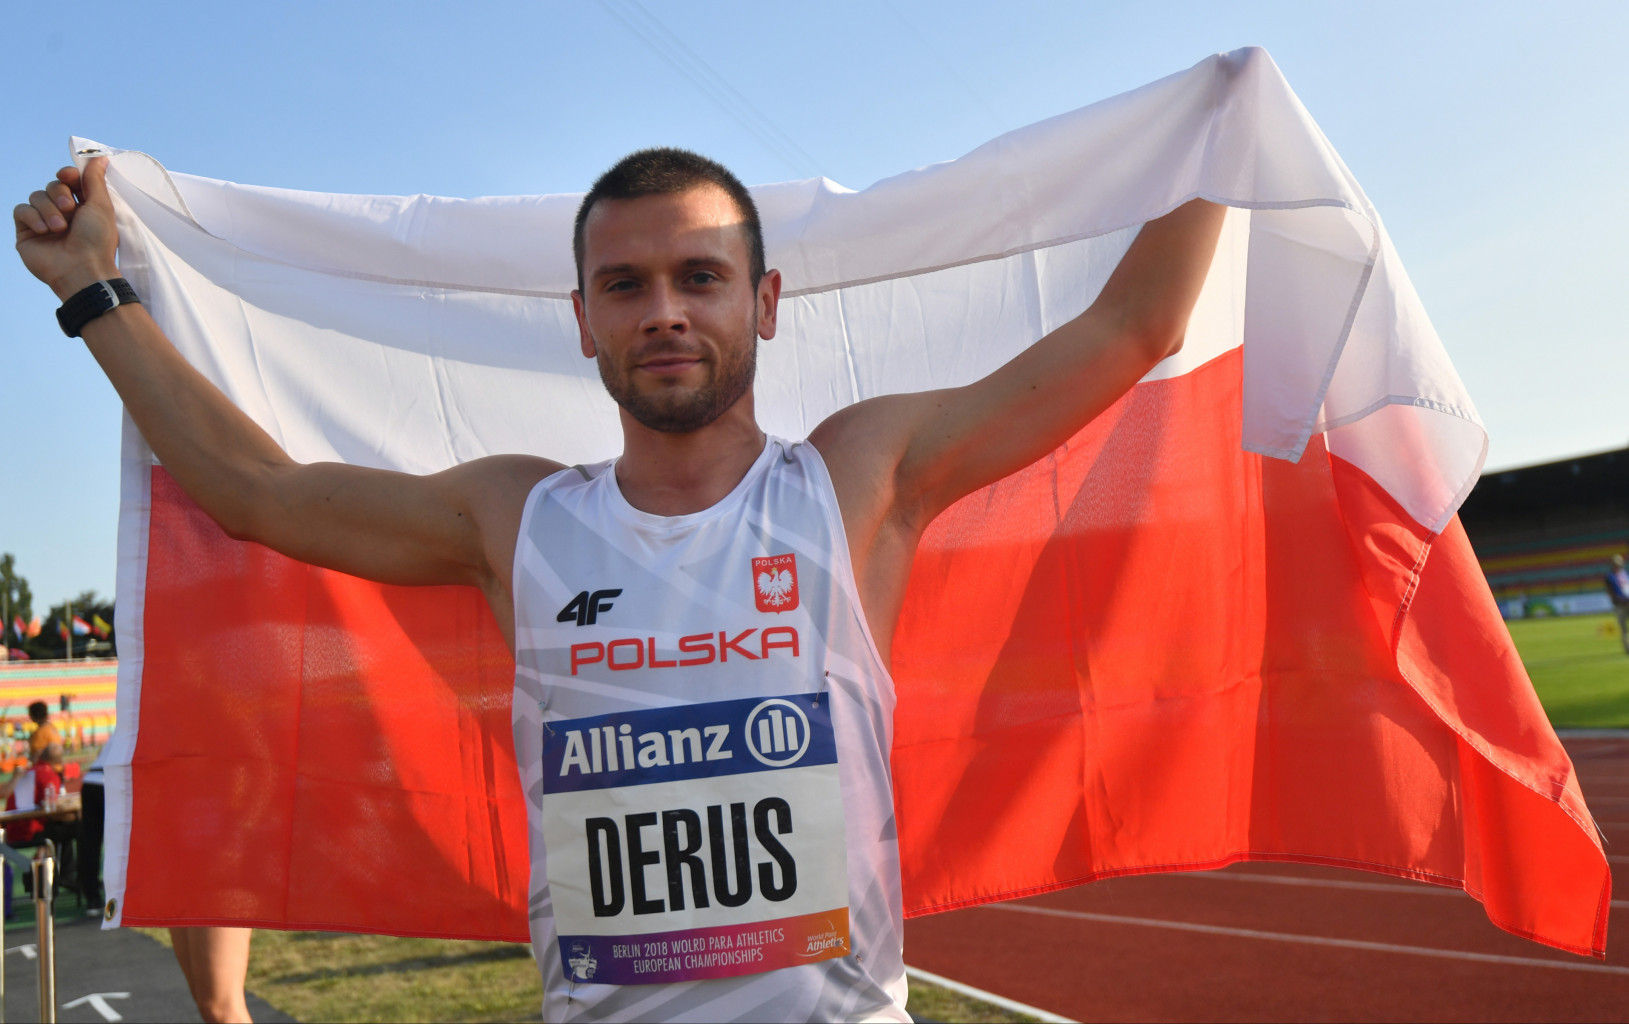 Na zdjęciu znajduje się mężczyzna (Michał Derus), który trzyma dużą flagę Polski za plecami.